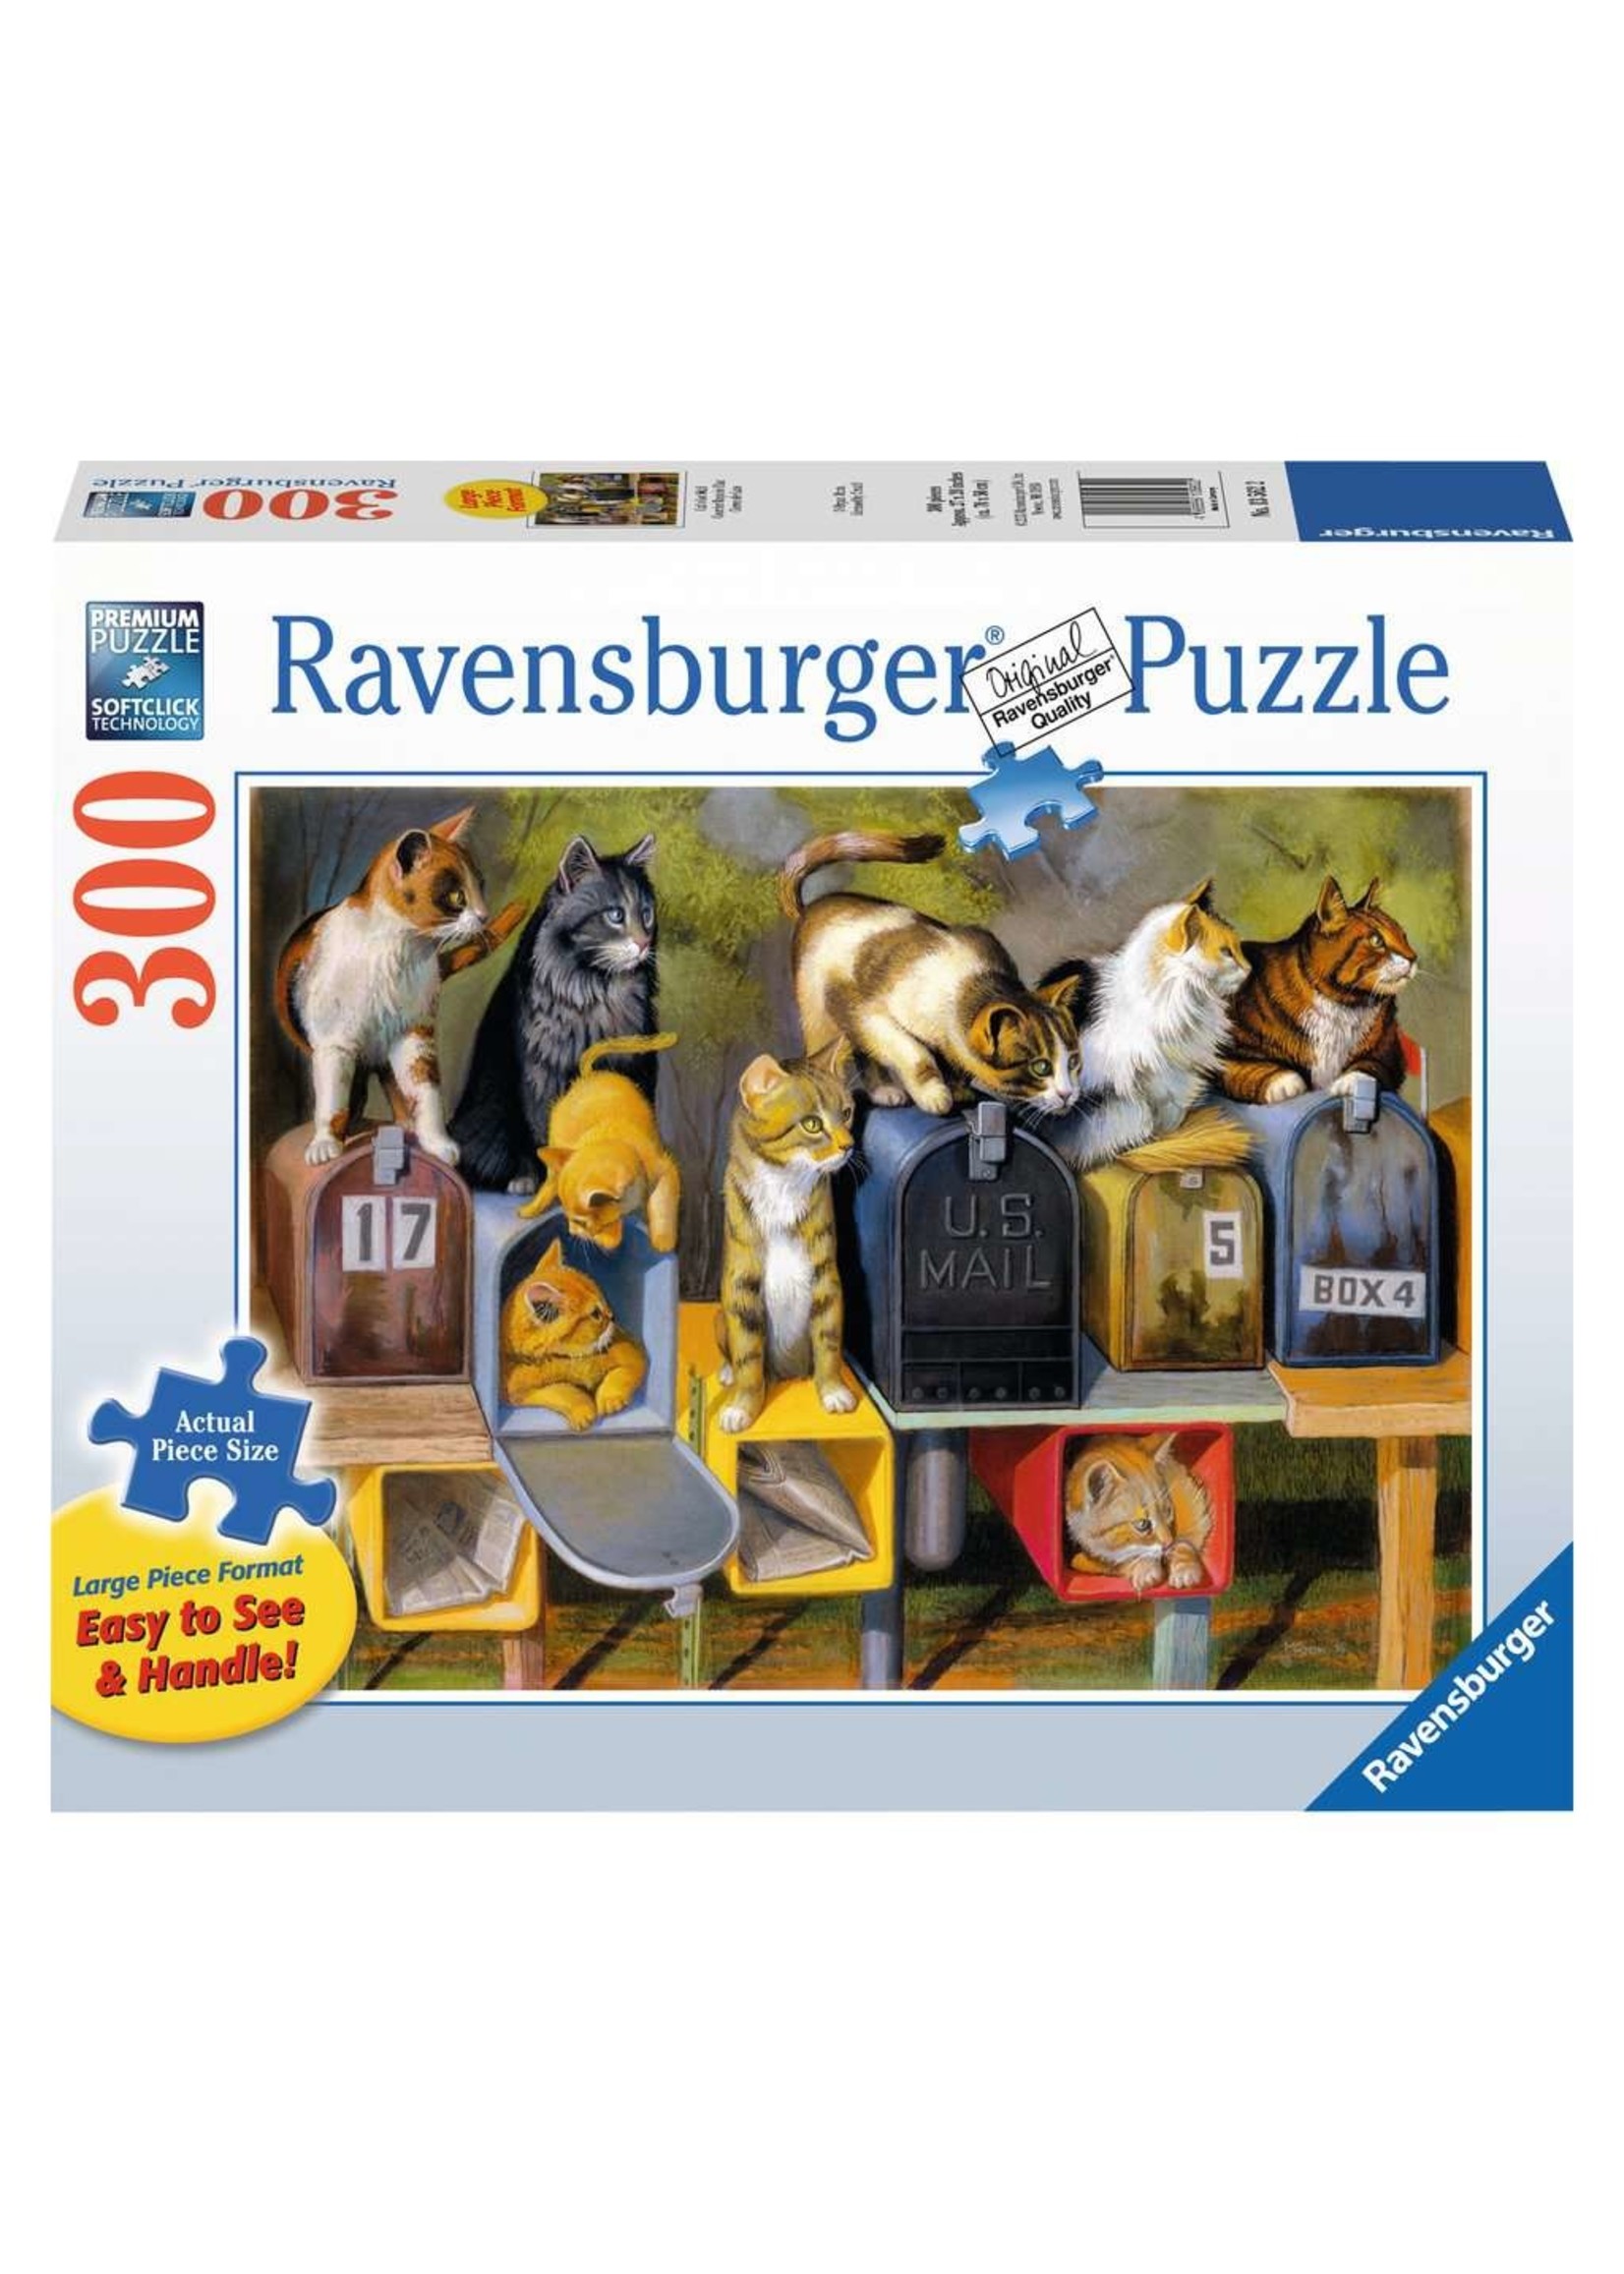 Ravensburger "Cat's Got Mail" 300 Piece Puzzle